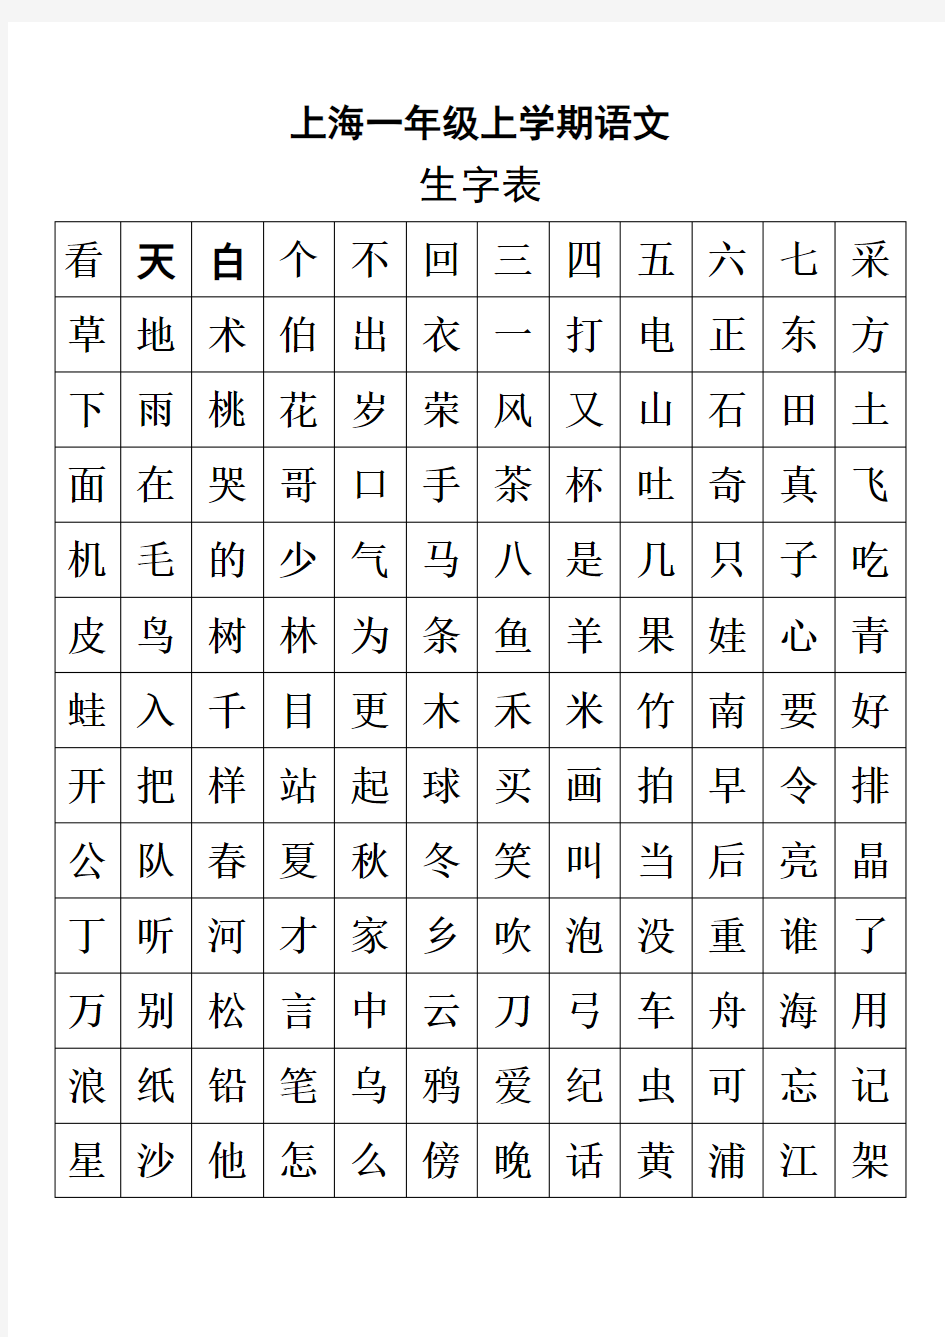 上海一年级语文生字表和组词表